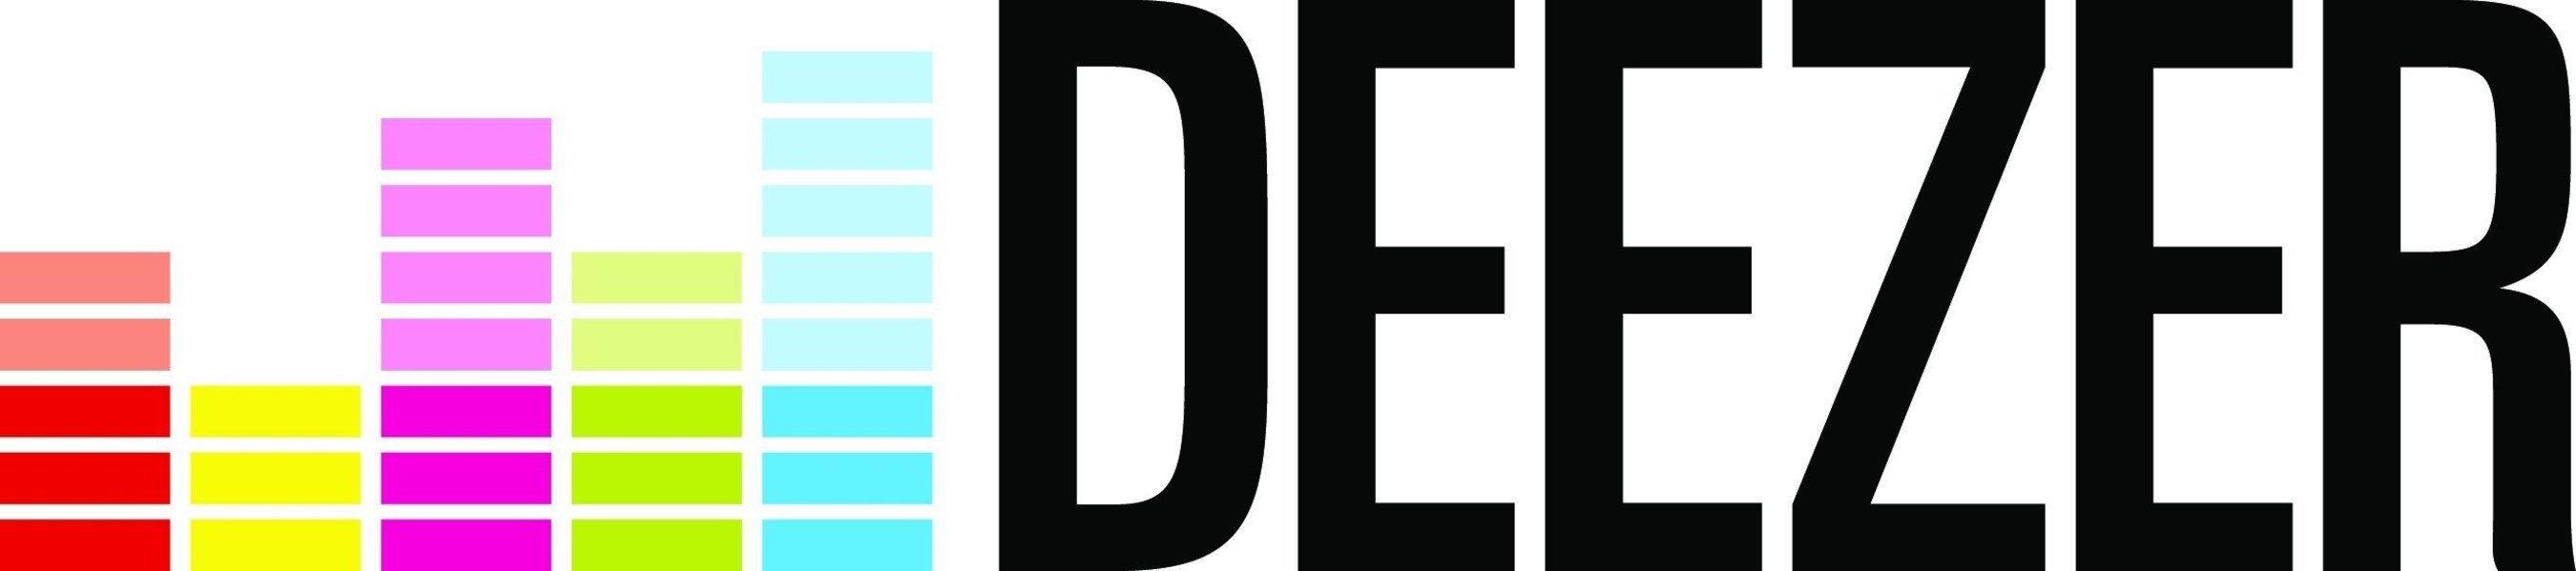 Deezer logo (PRNewsFoto/Deezer) (PRNewsFoto/Deezer)